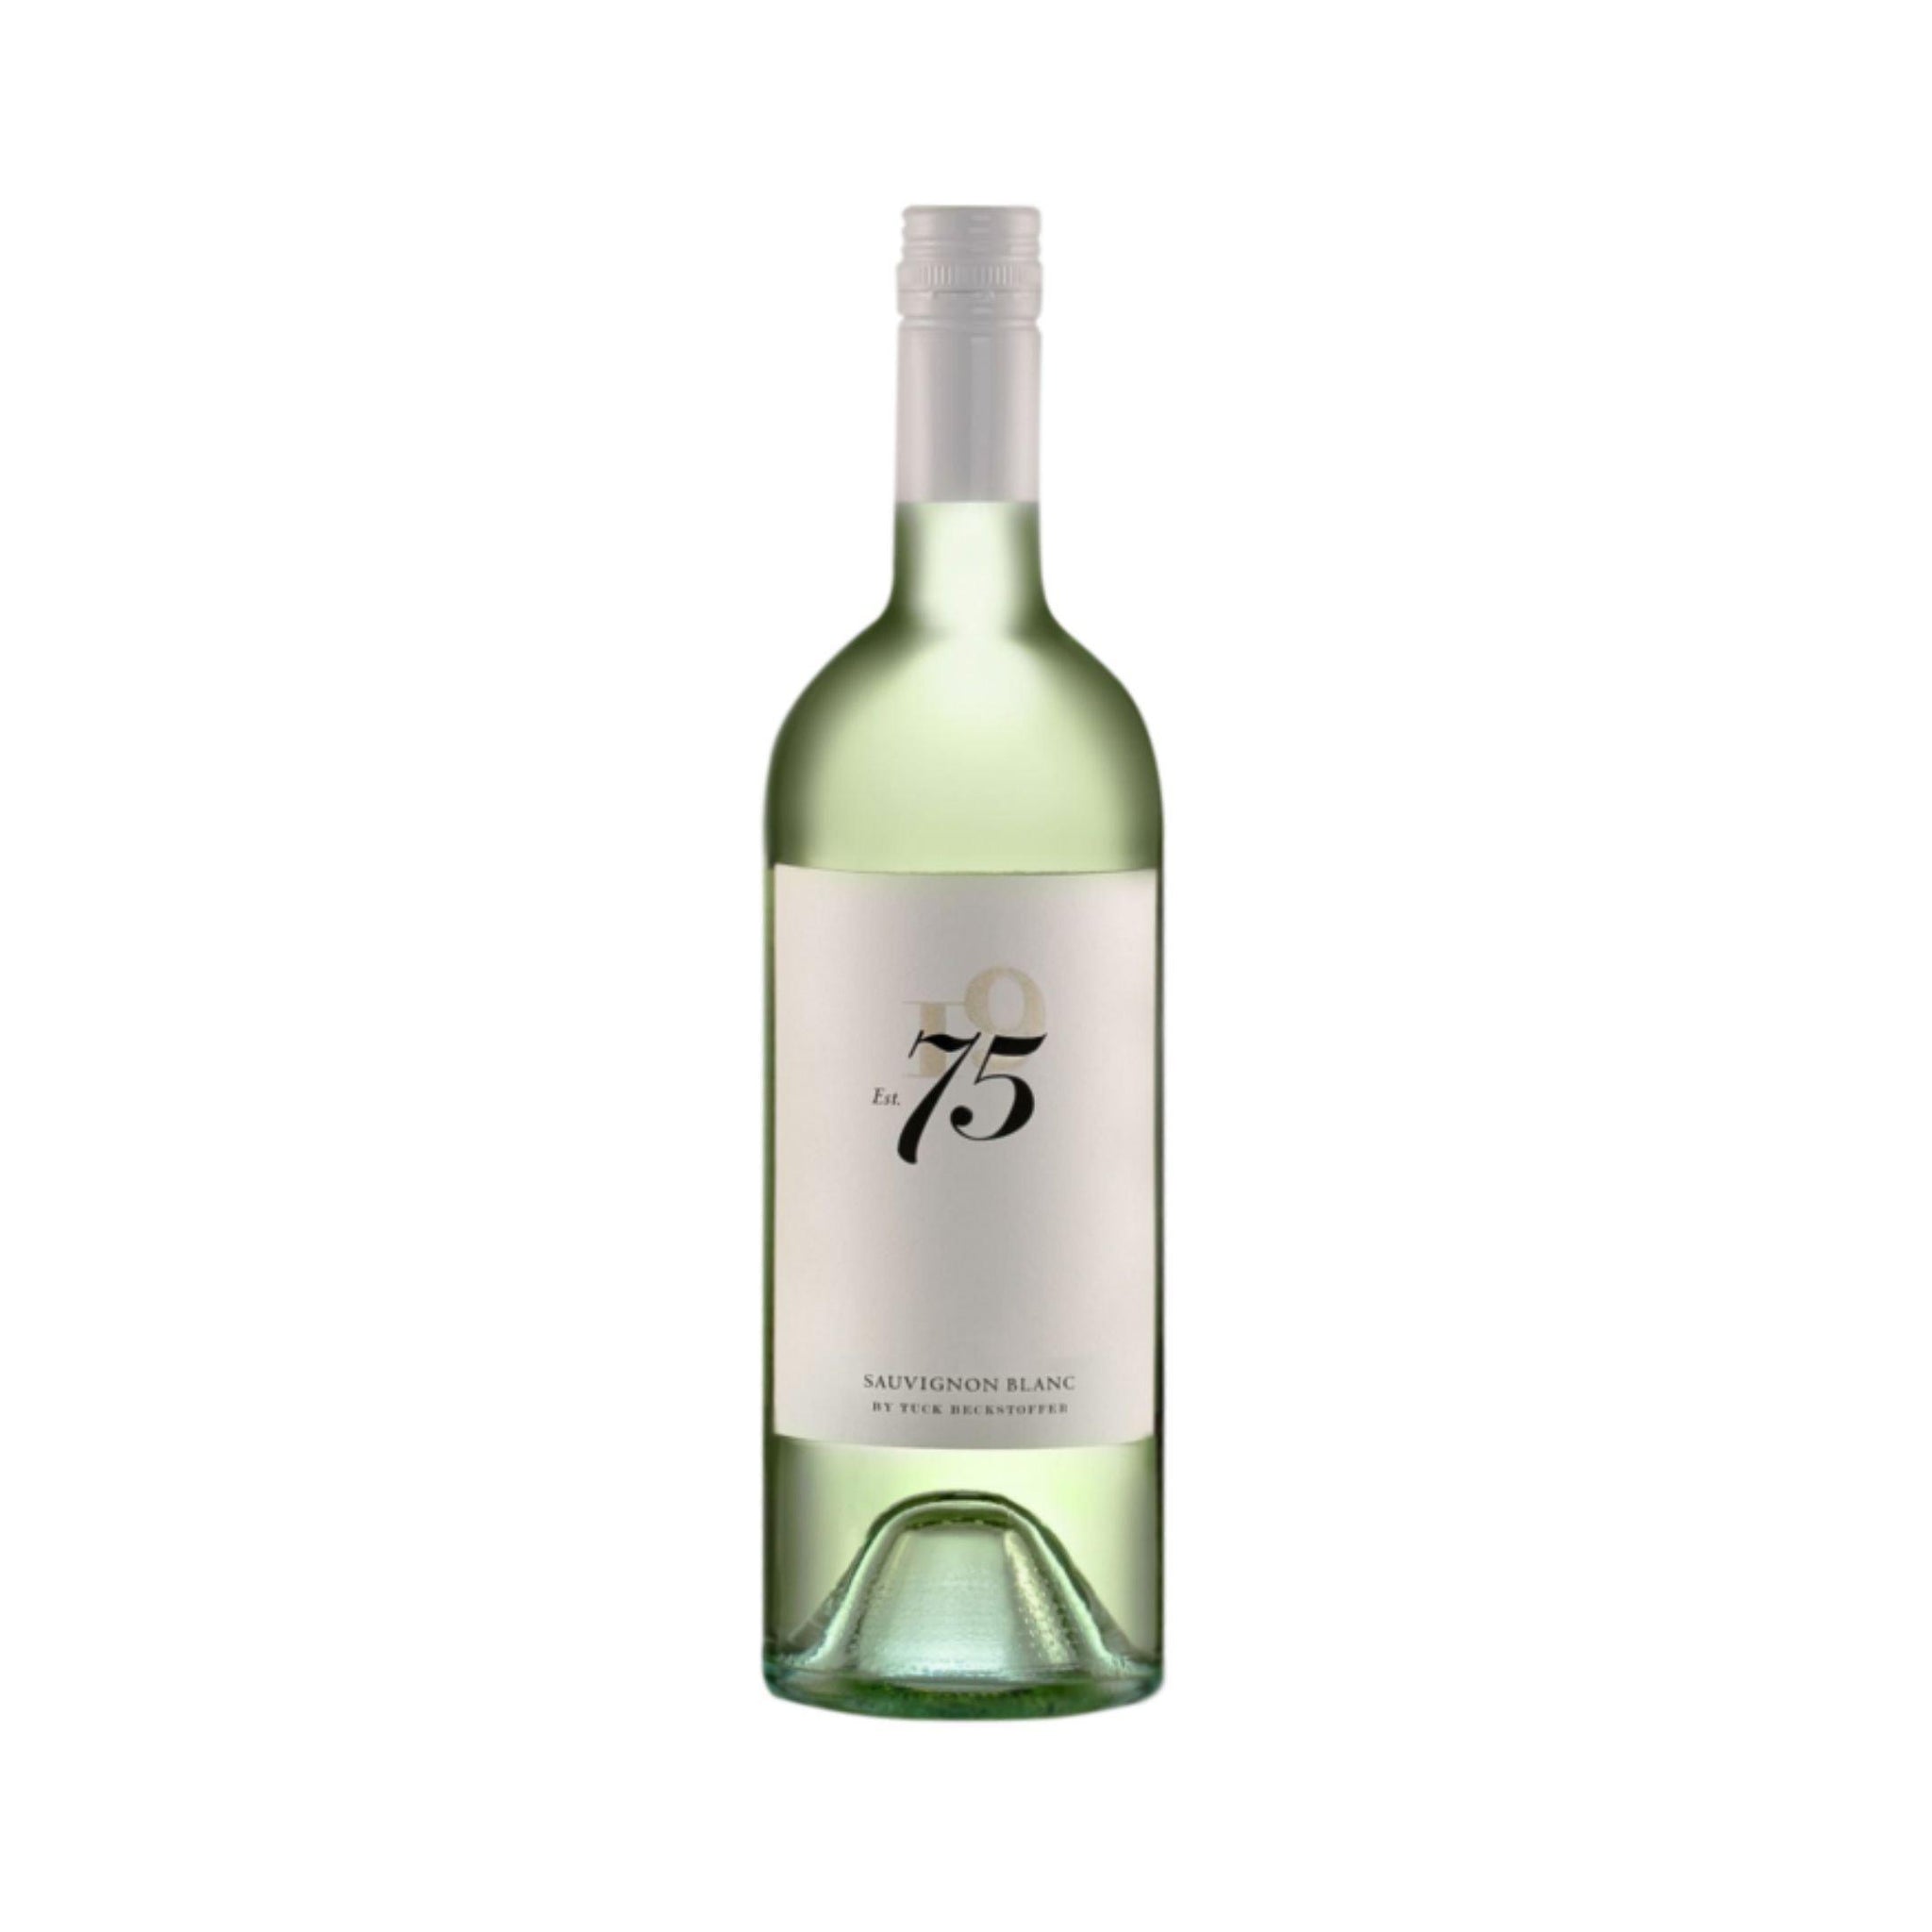 75 Wine Company Sauvignon Blanc 2018 750 ml